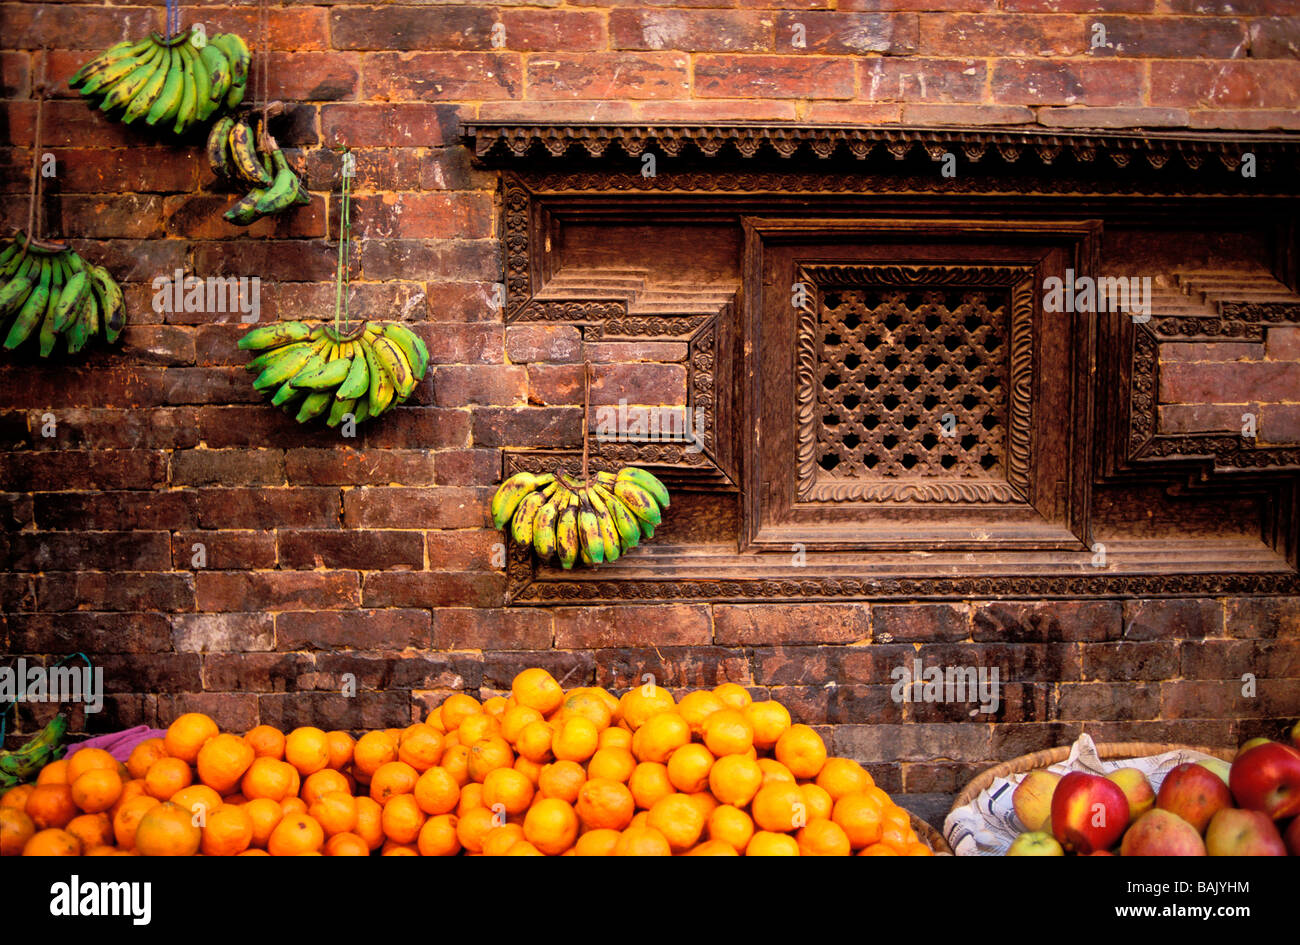 La vallée de Katmandou, Népal, Zone Bagmati, district de Bhaktapur, Bhaktapur, fruits stall Banque D'Images